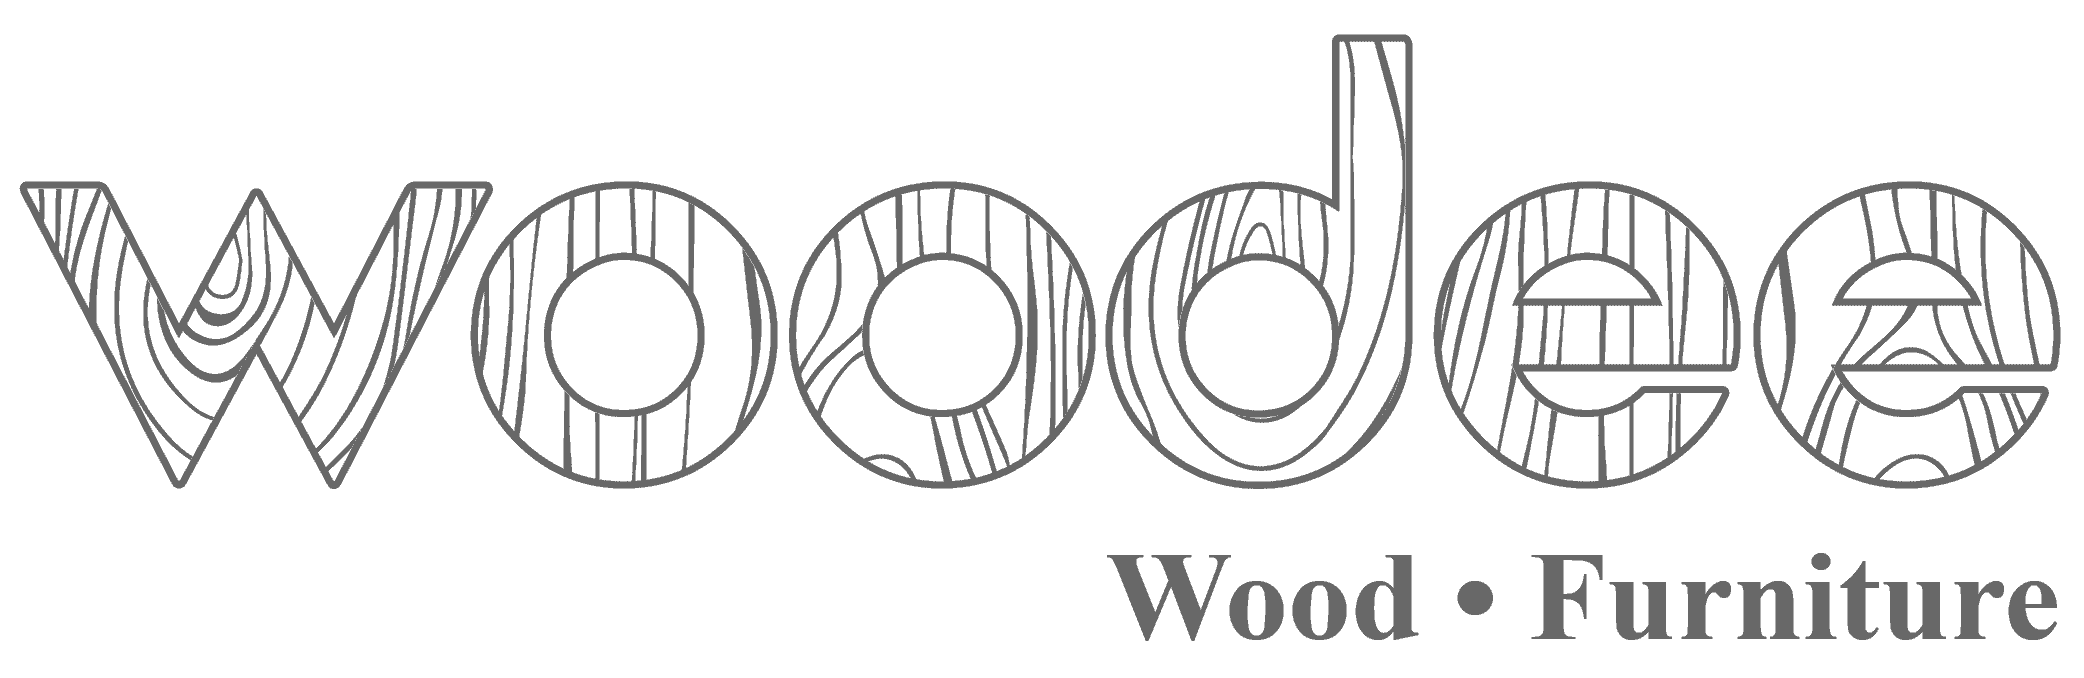 woodee logo pattern